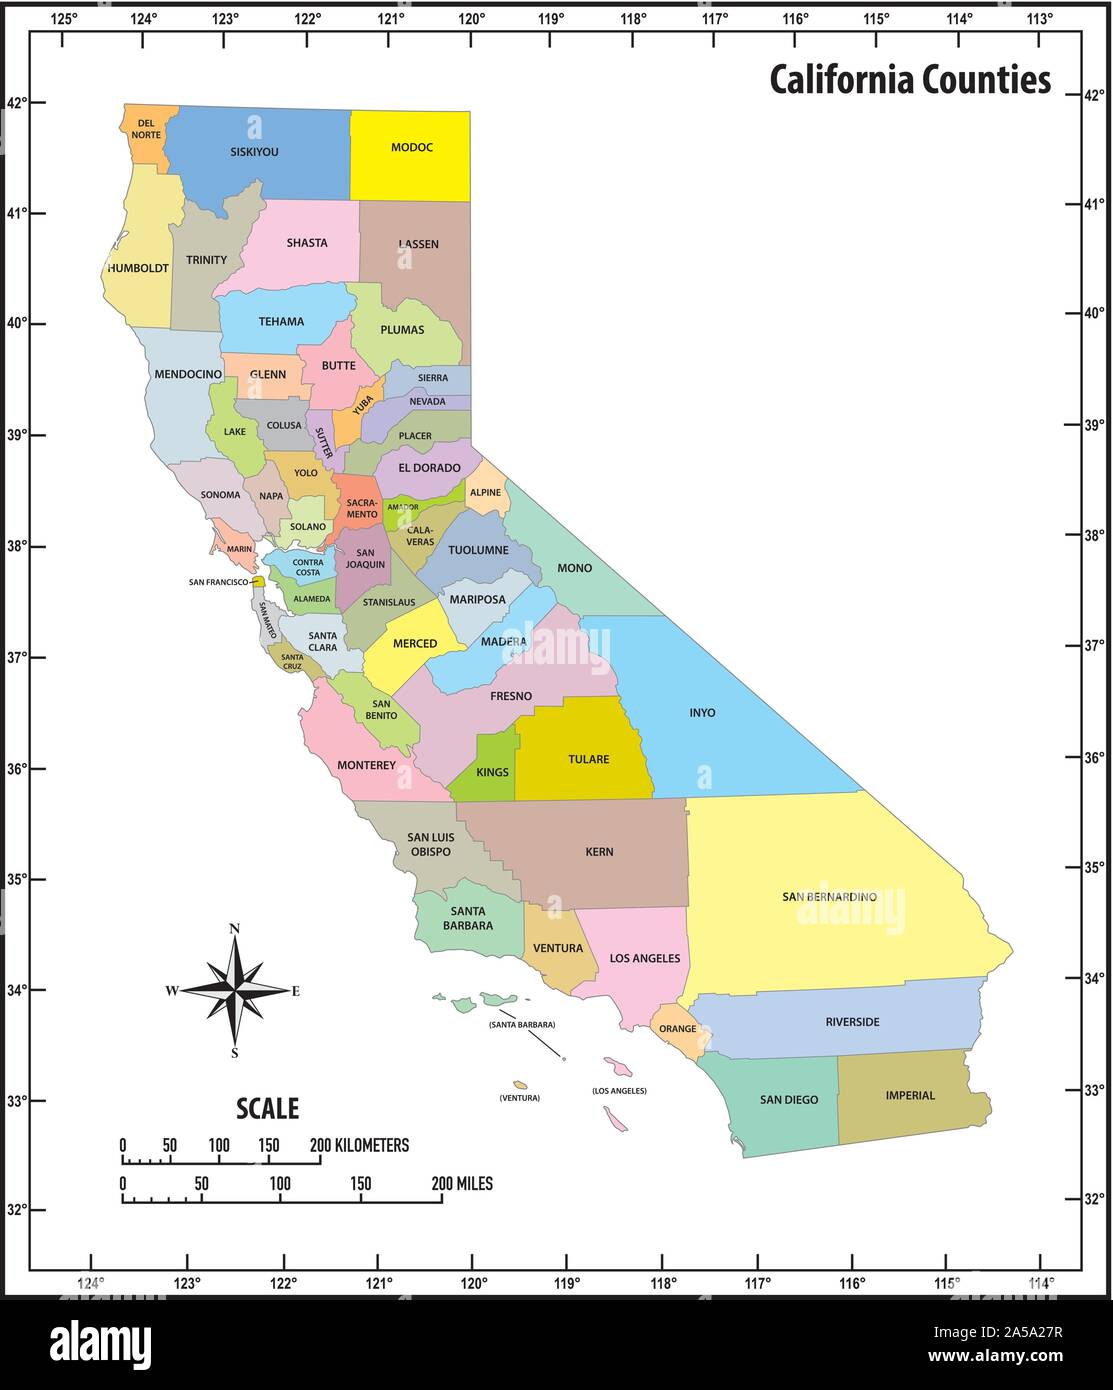 Legibilidad Mirar Fijamente Floración Estado De California Mapa Ventana Mental Mar Mediterráneo